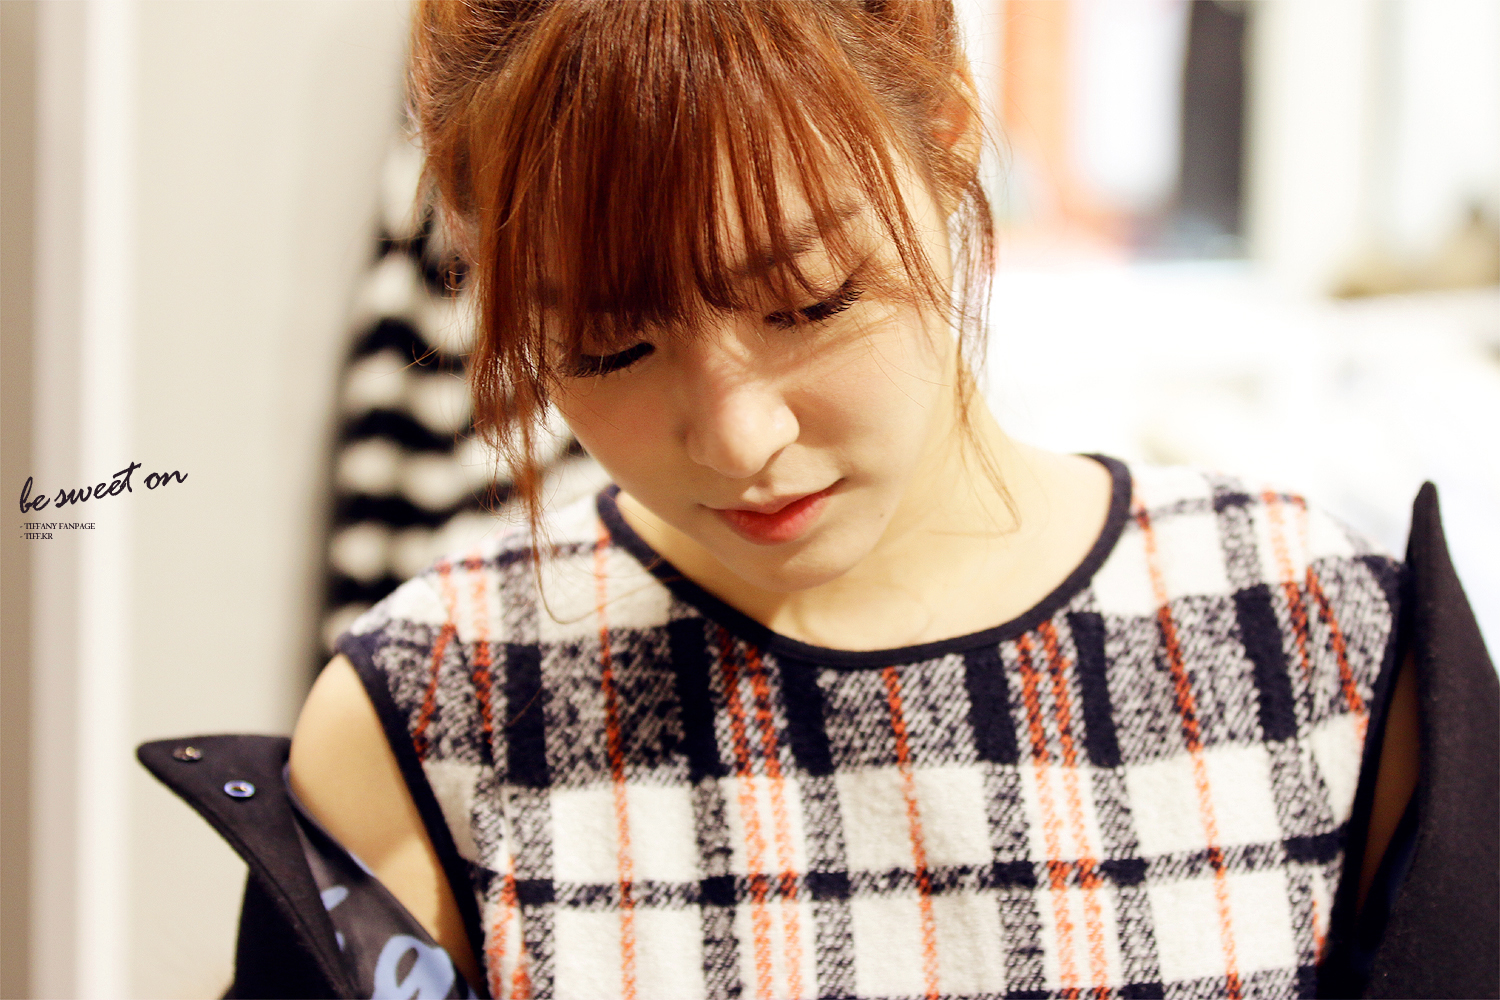 [PIC][28-11-2013]Tiffany ghé thăm cửa hàng "QUA" ở Hyundai Department Store vào trưa nay - Page 3 2410F746529C93BE1B66EA